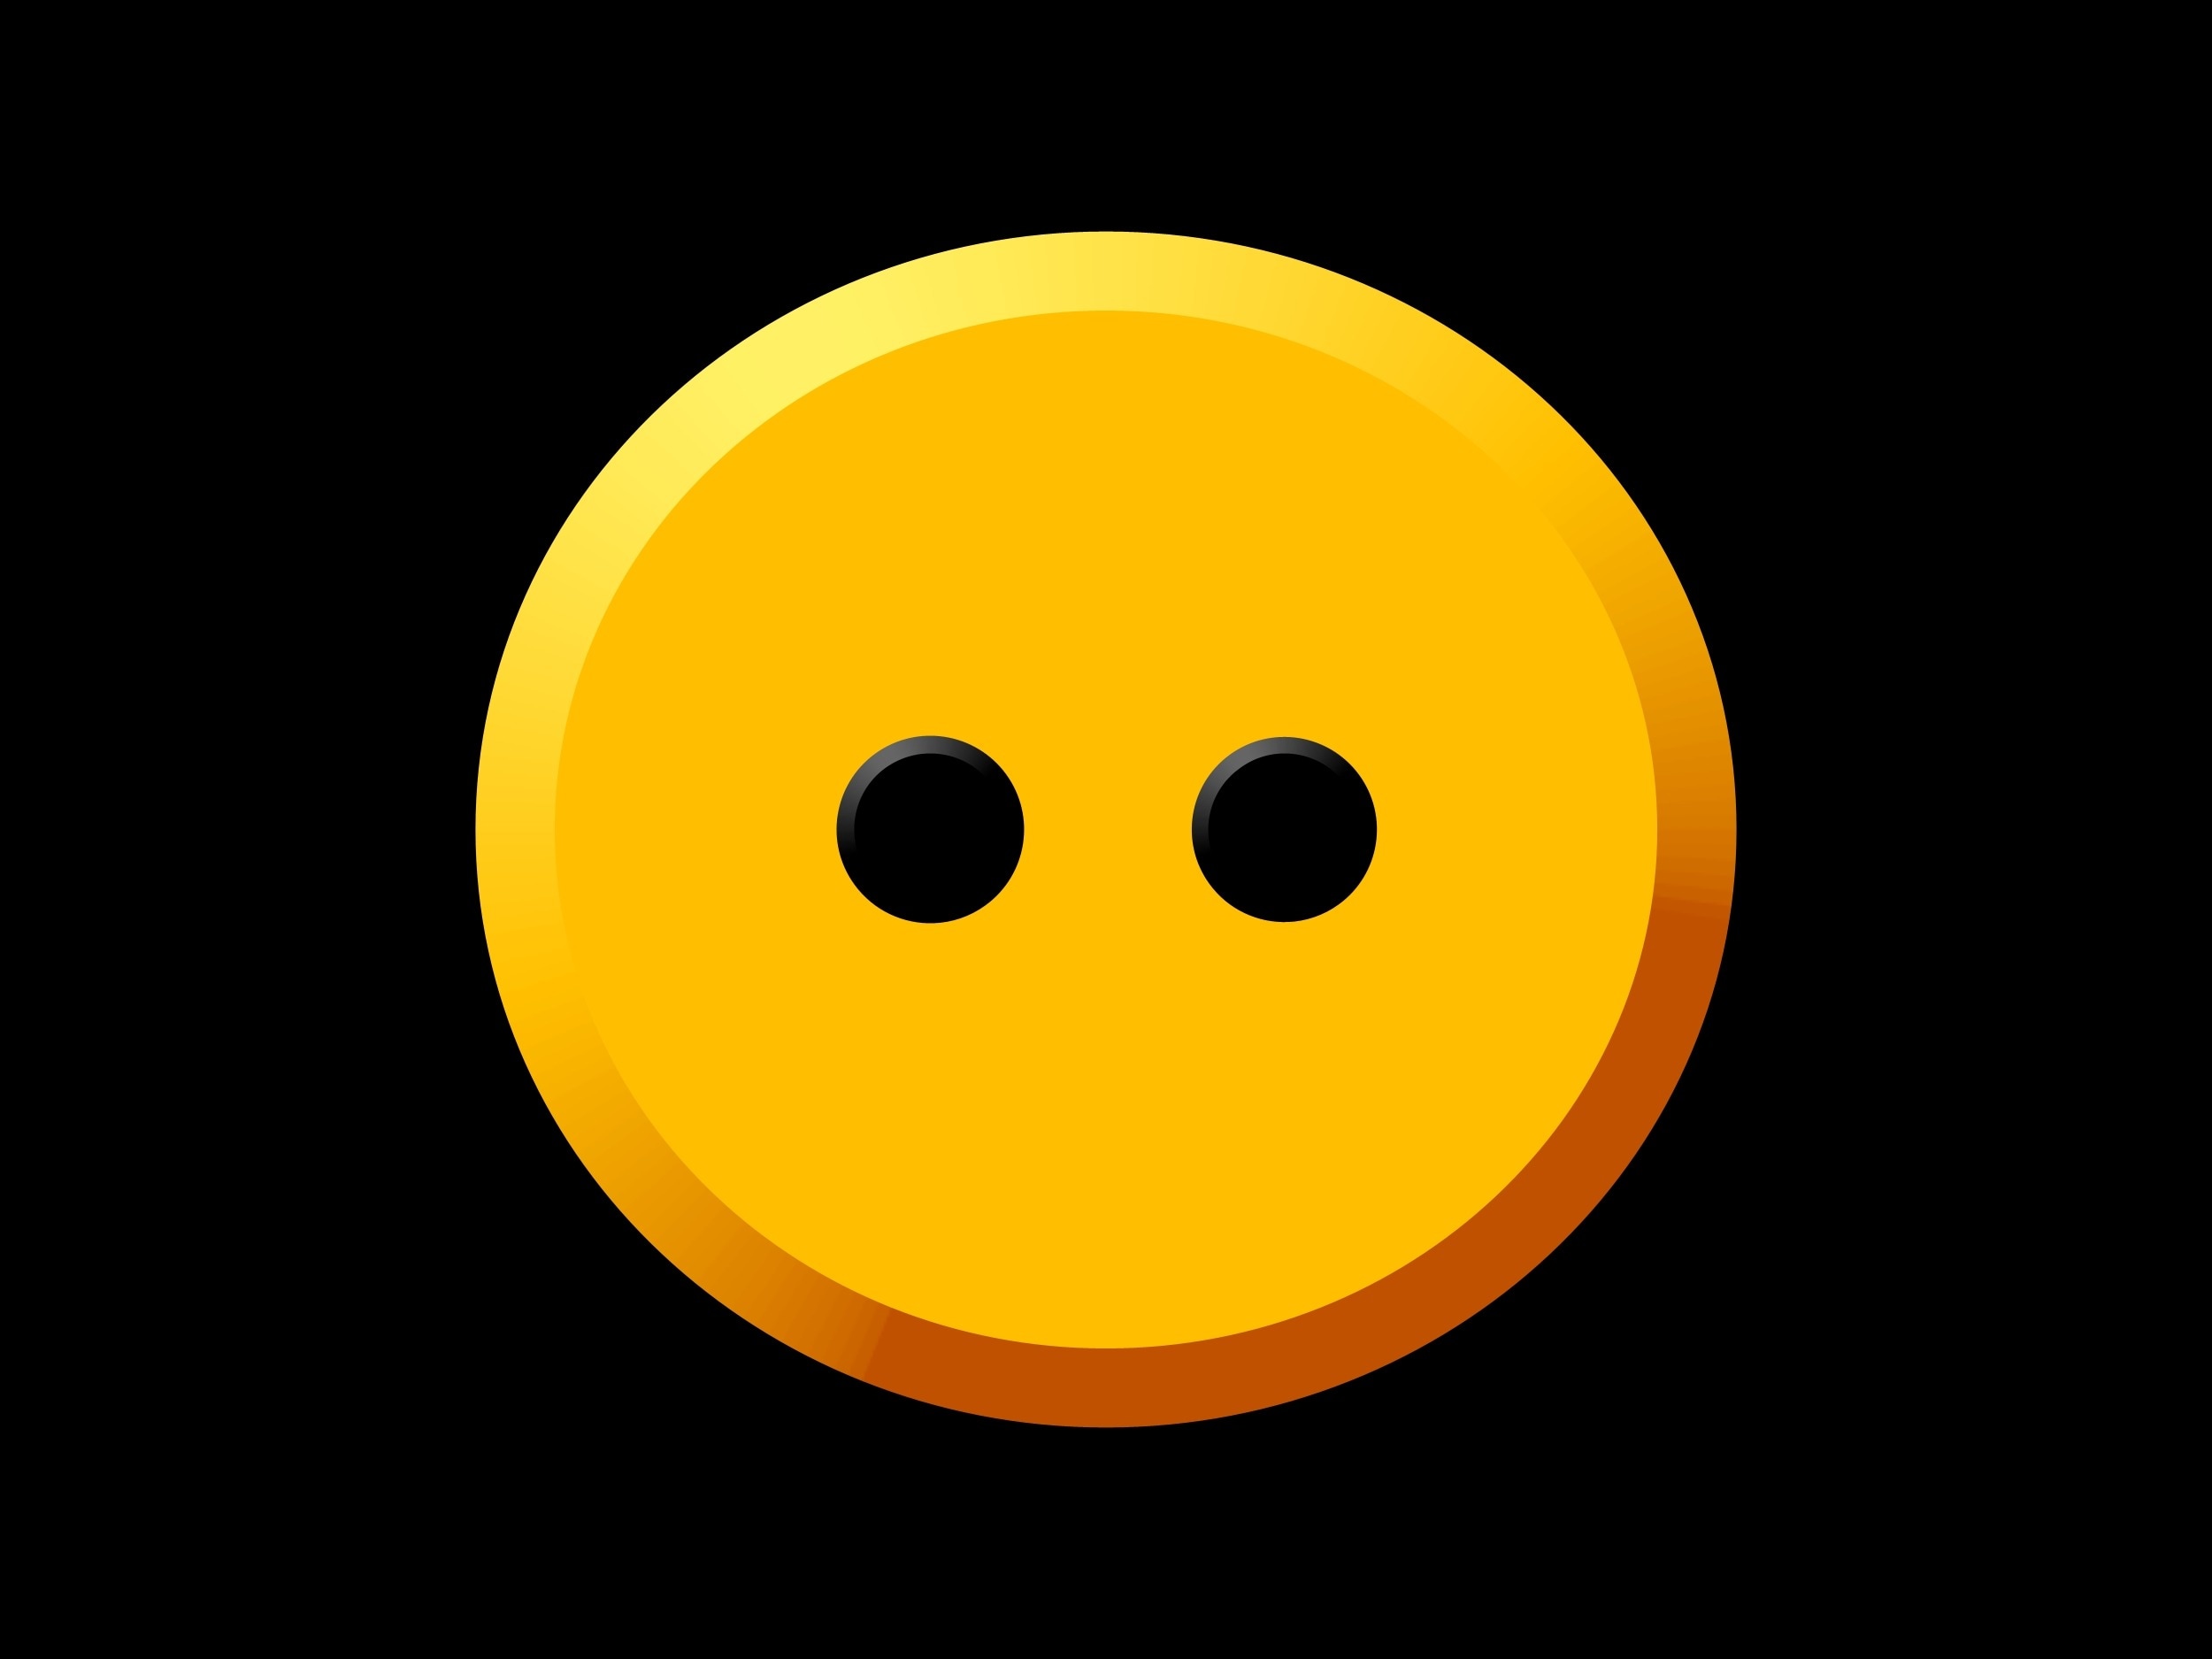 yellow and black round logo